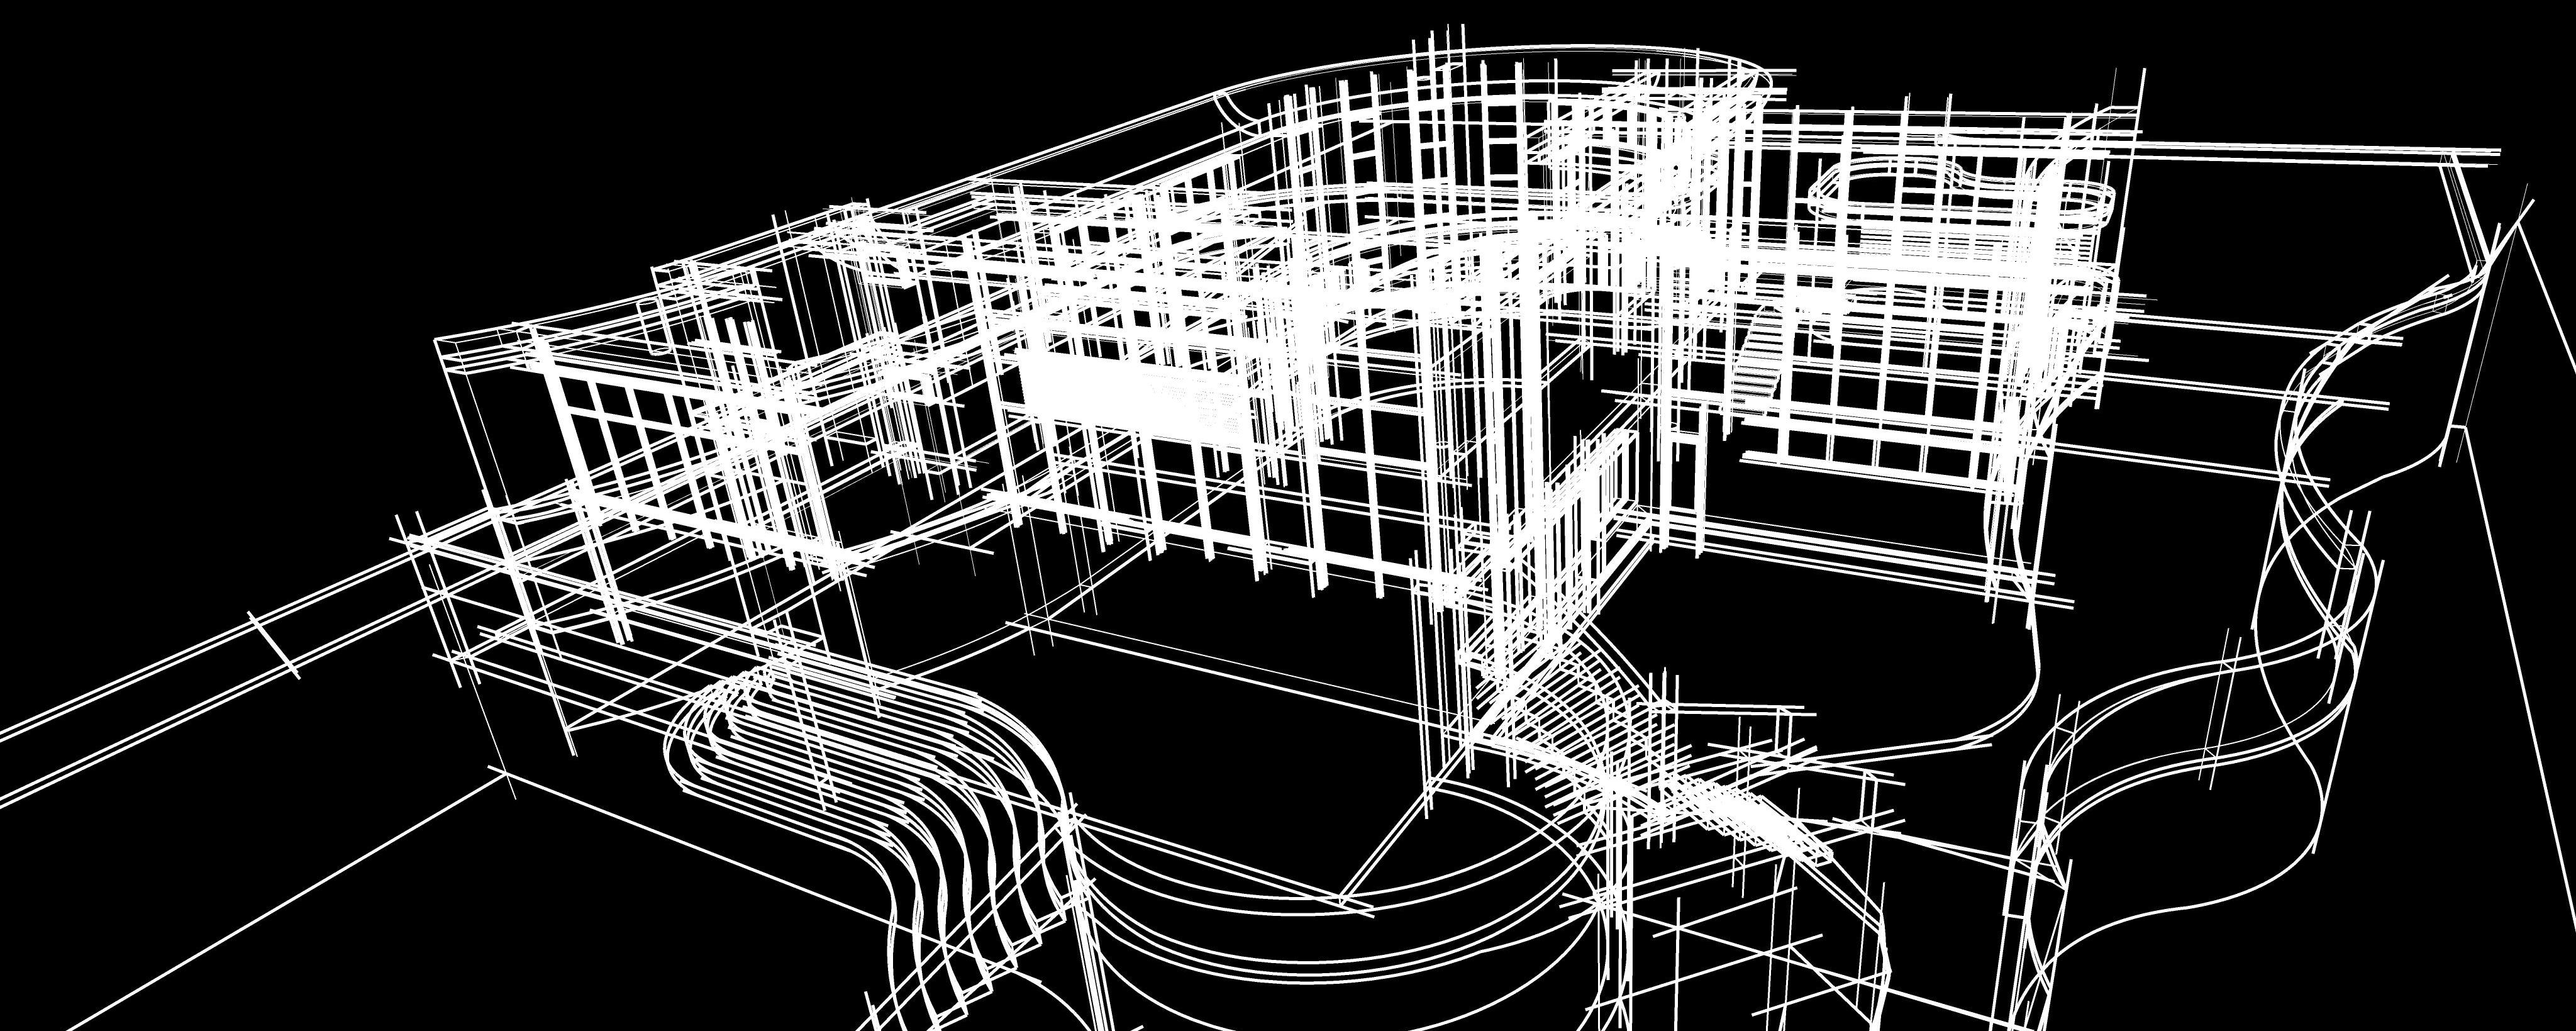 Inwentaryzacja architektoniczna przy wykorzystaniu skaningu laserowego 3D